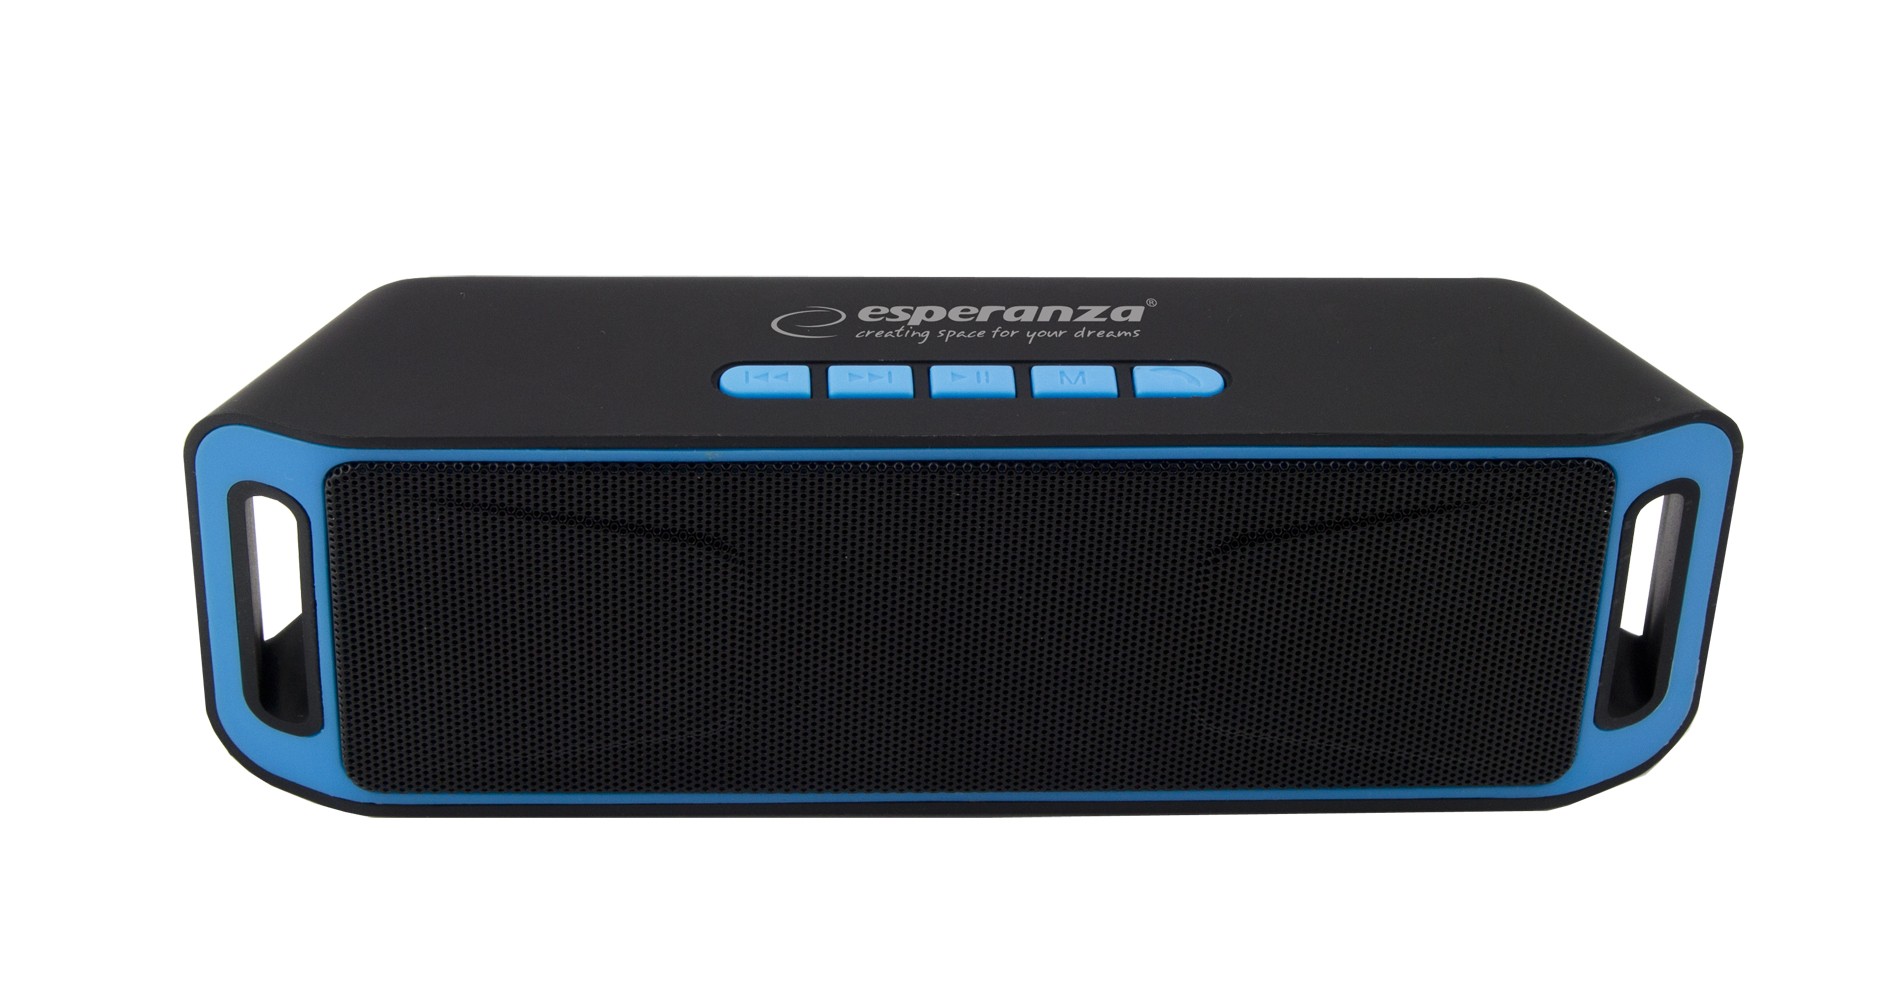 Boxa portabila Esperanza cu Radio FM, Bluetooth 4.1, 6W, 800mAh, microUSB, negru albastru